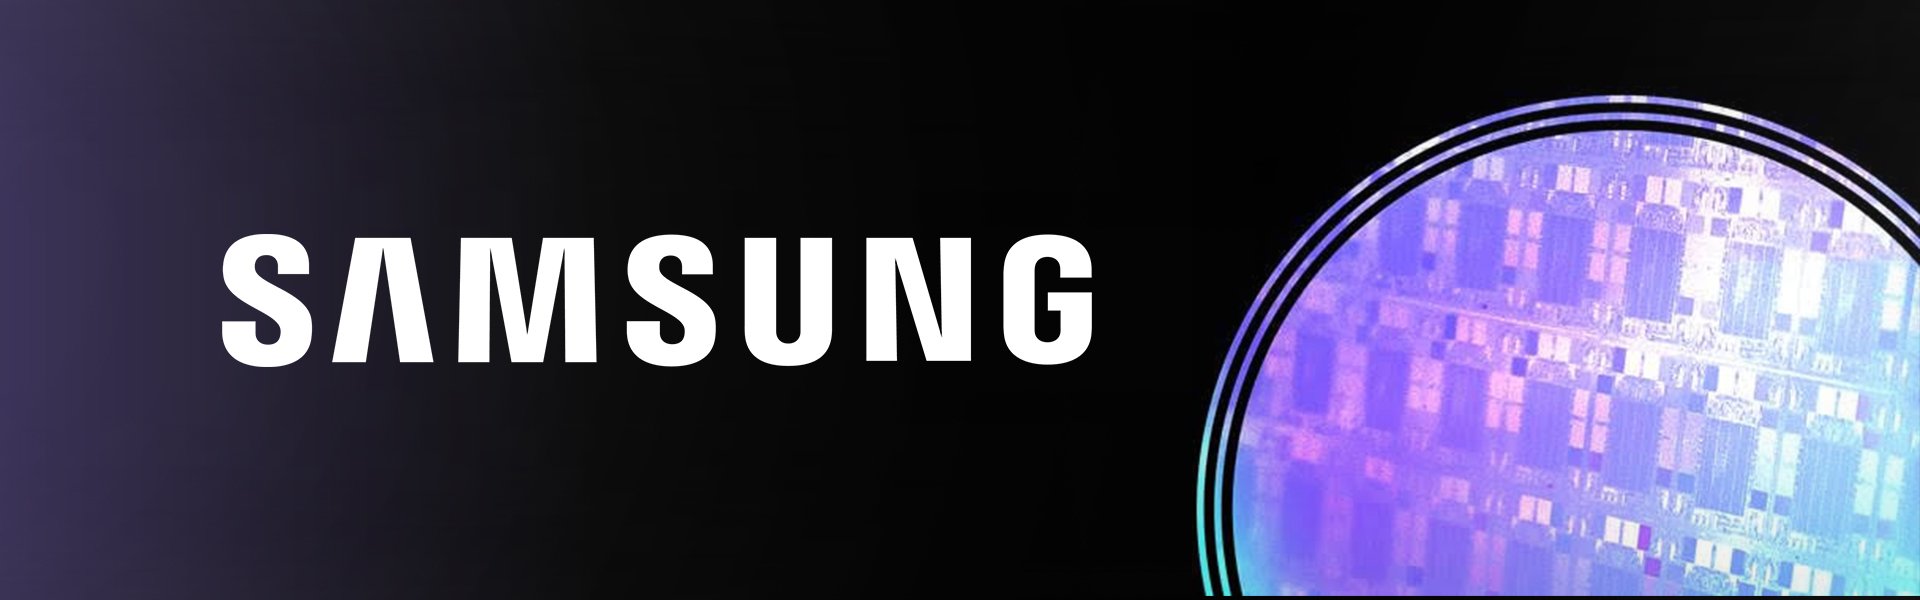 Samsung Galaxy S20 FE 5G, 128 GB, Dual SIM, Cloud Navy Samsung